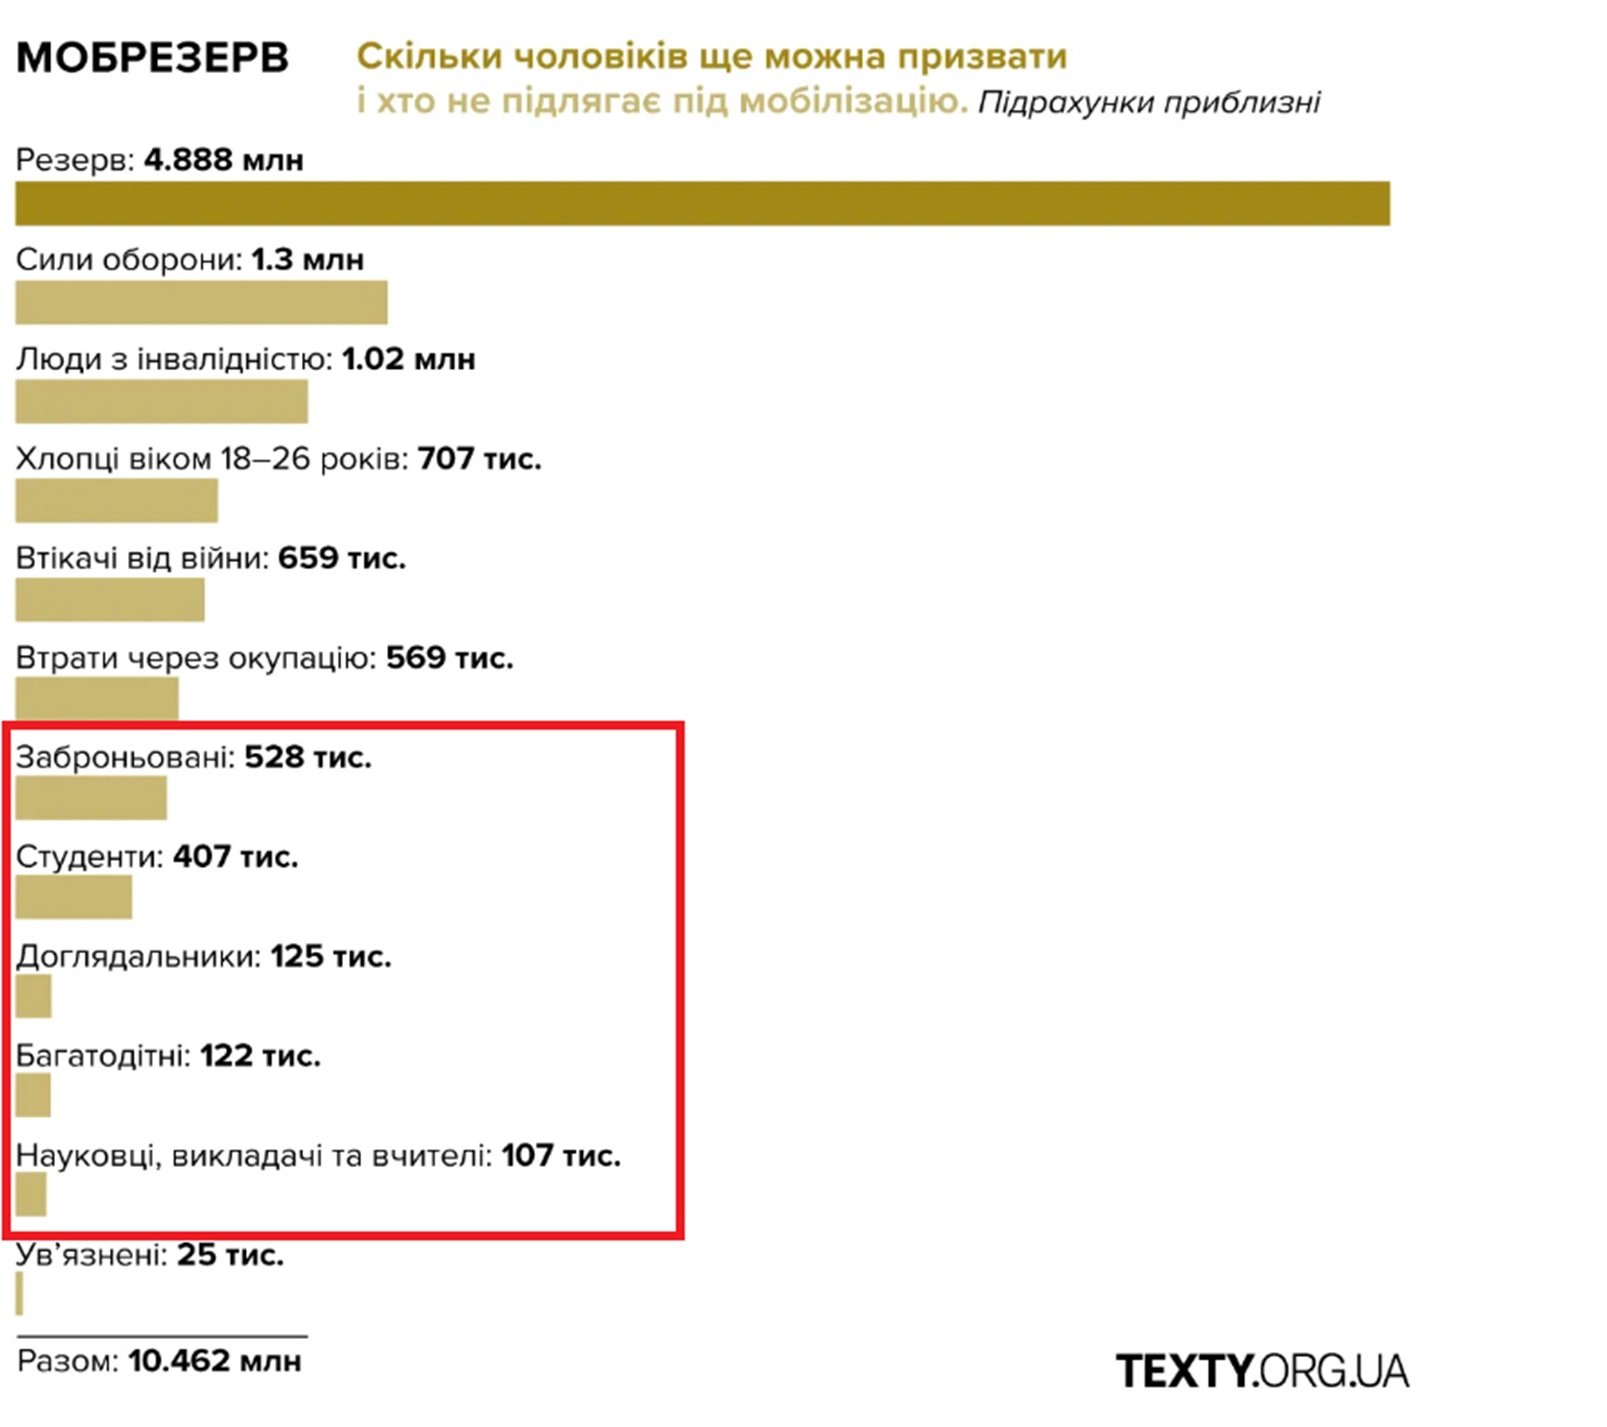 Мобілізаційний резверв: оцінка Texty.org.ua